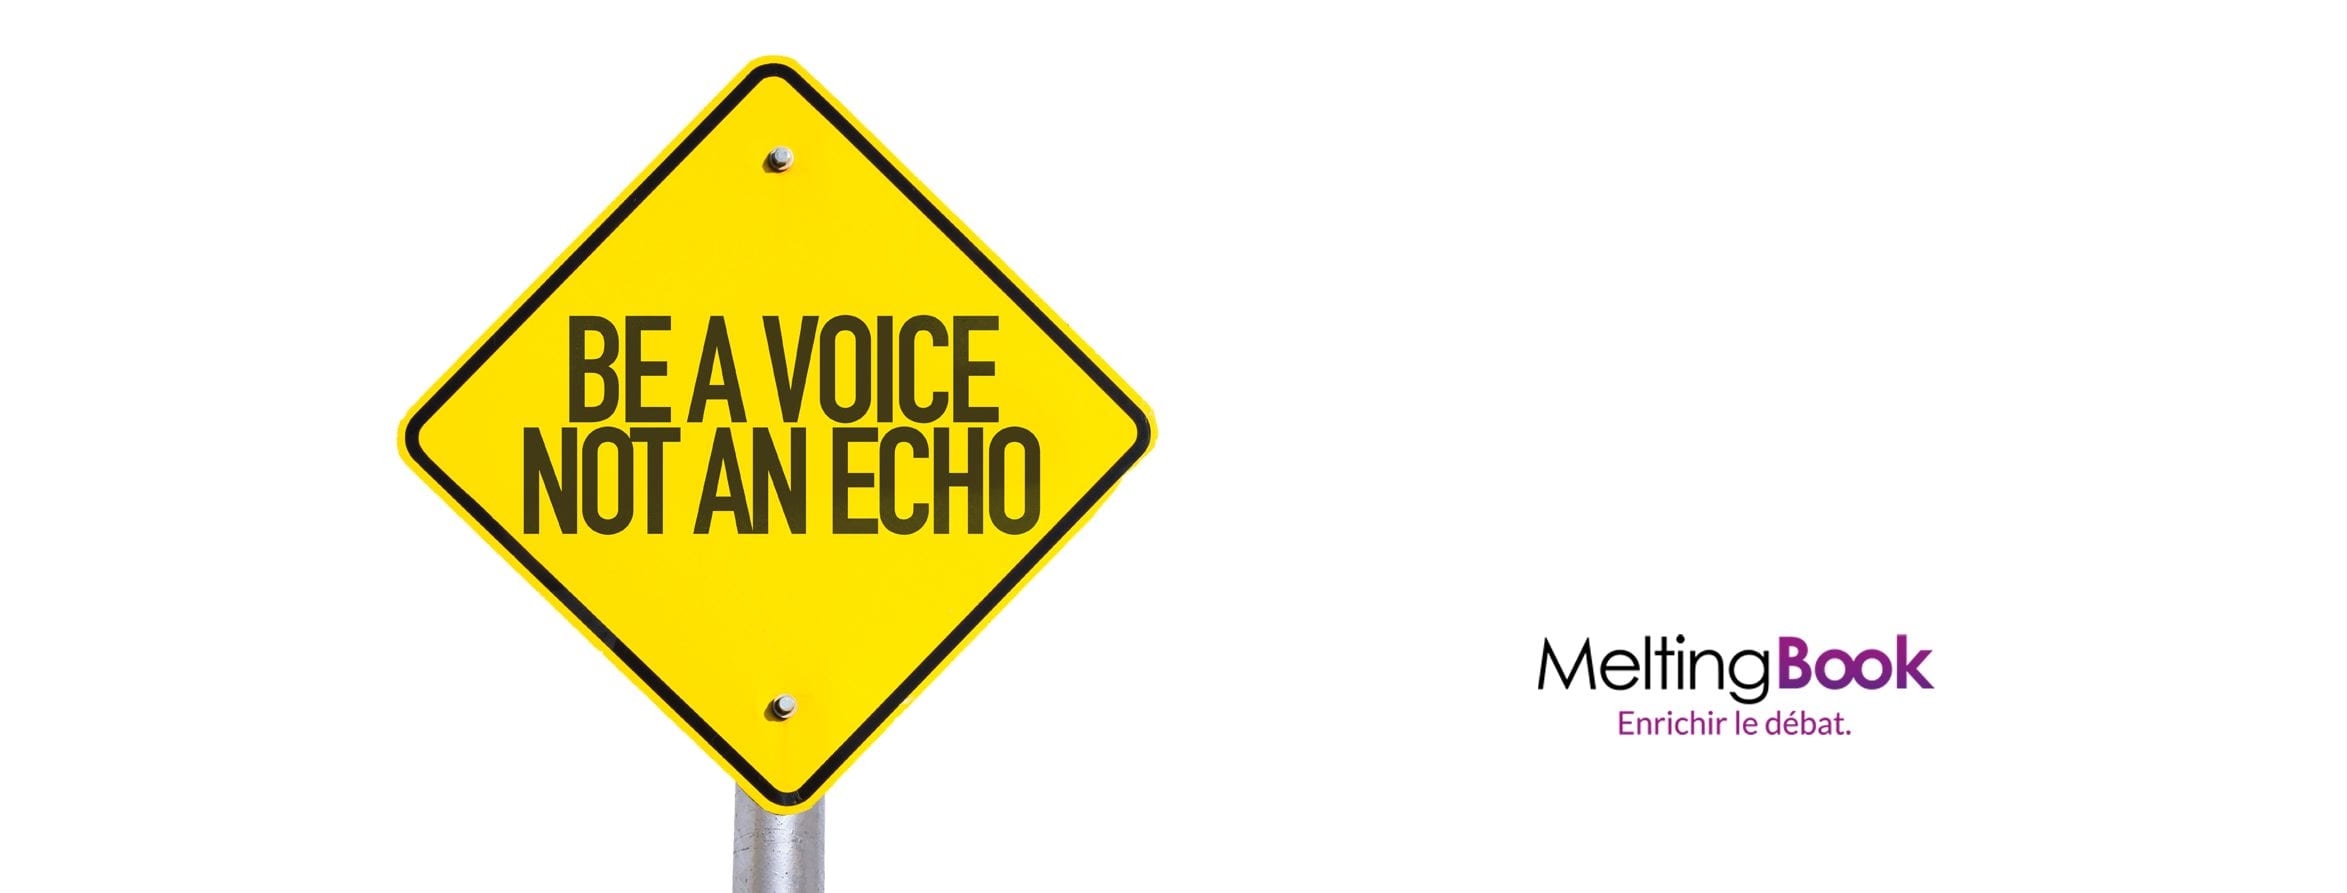 Edito Une Voix Pas Un Echo Meltingbook - Ñ‚Ð¾Ñ€Ñ‚ roblox level 7 download